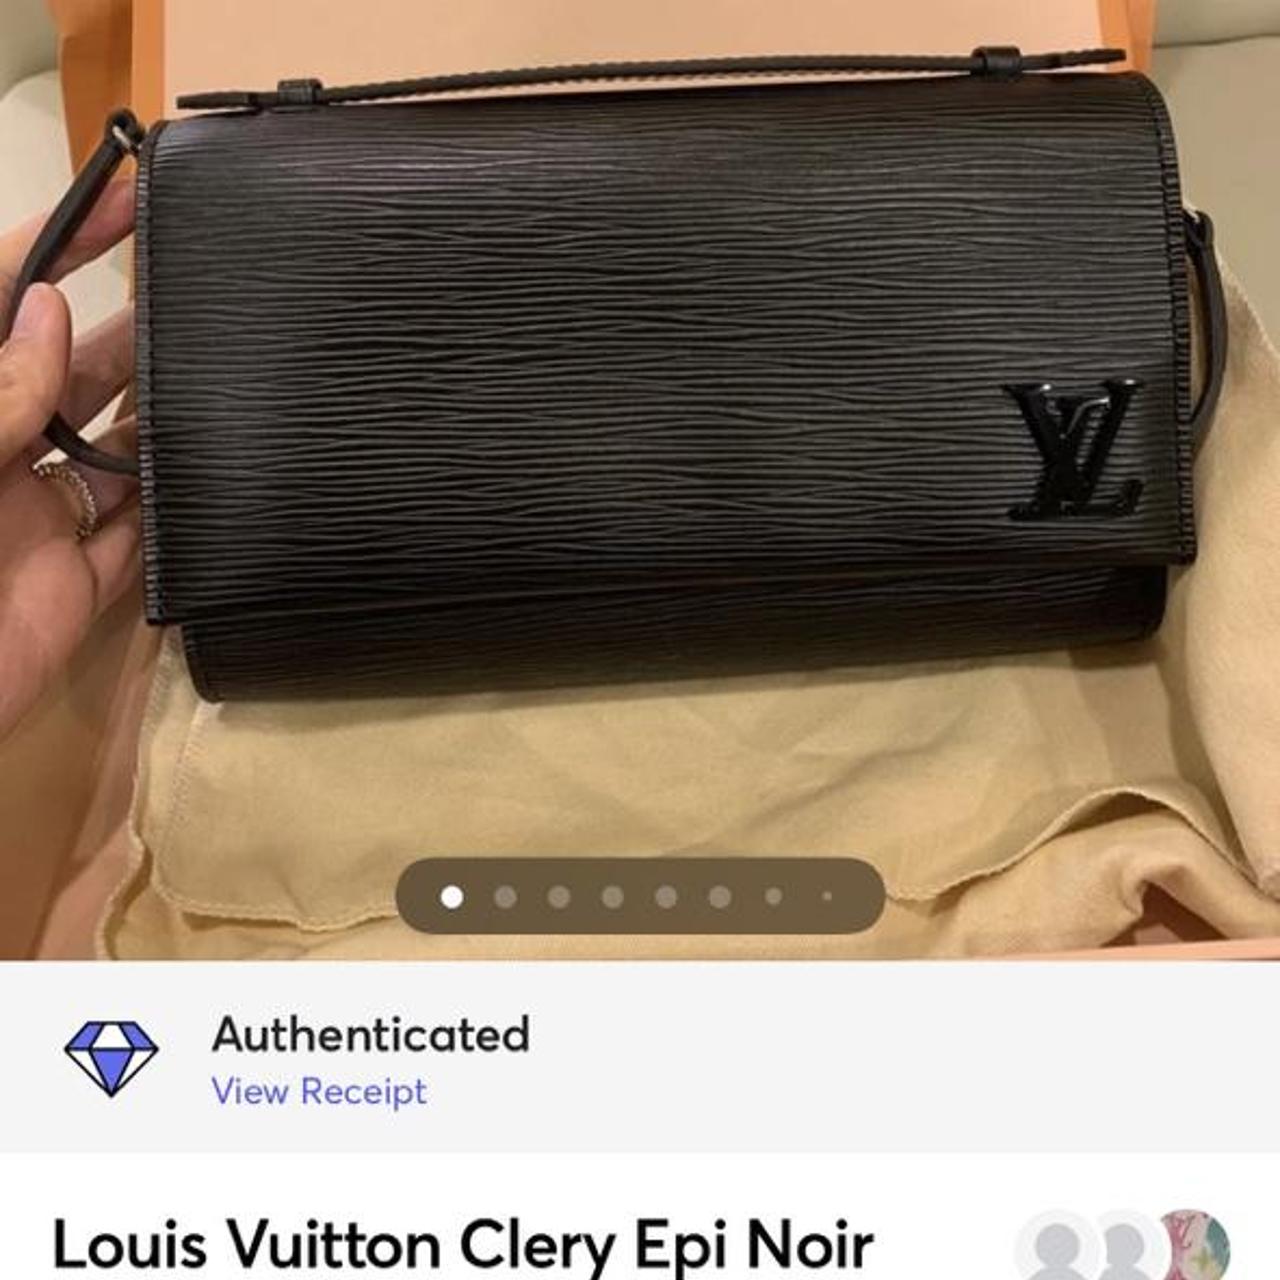 authentic louis button clery epi noir black clutch - Depop